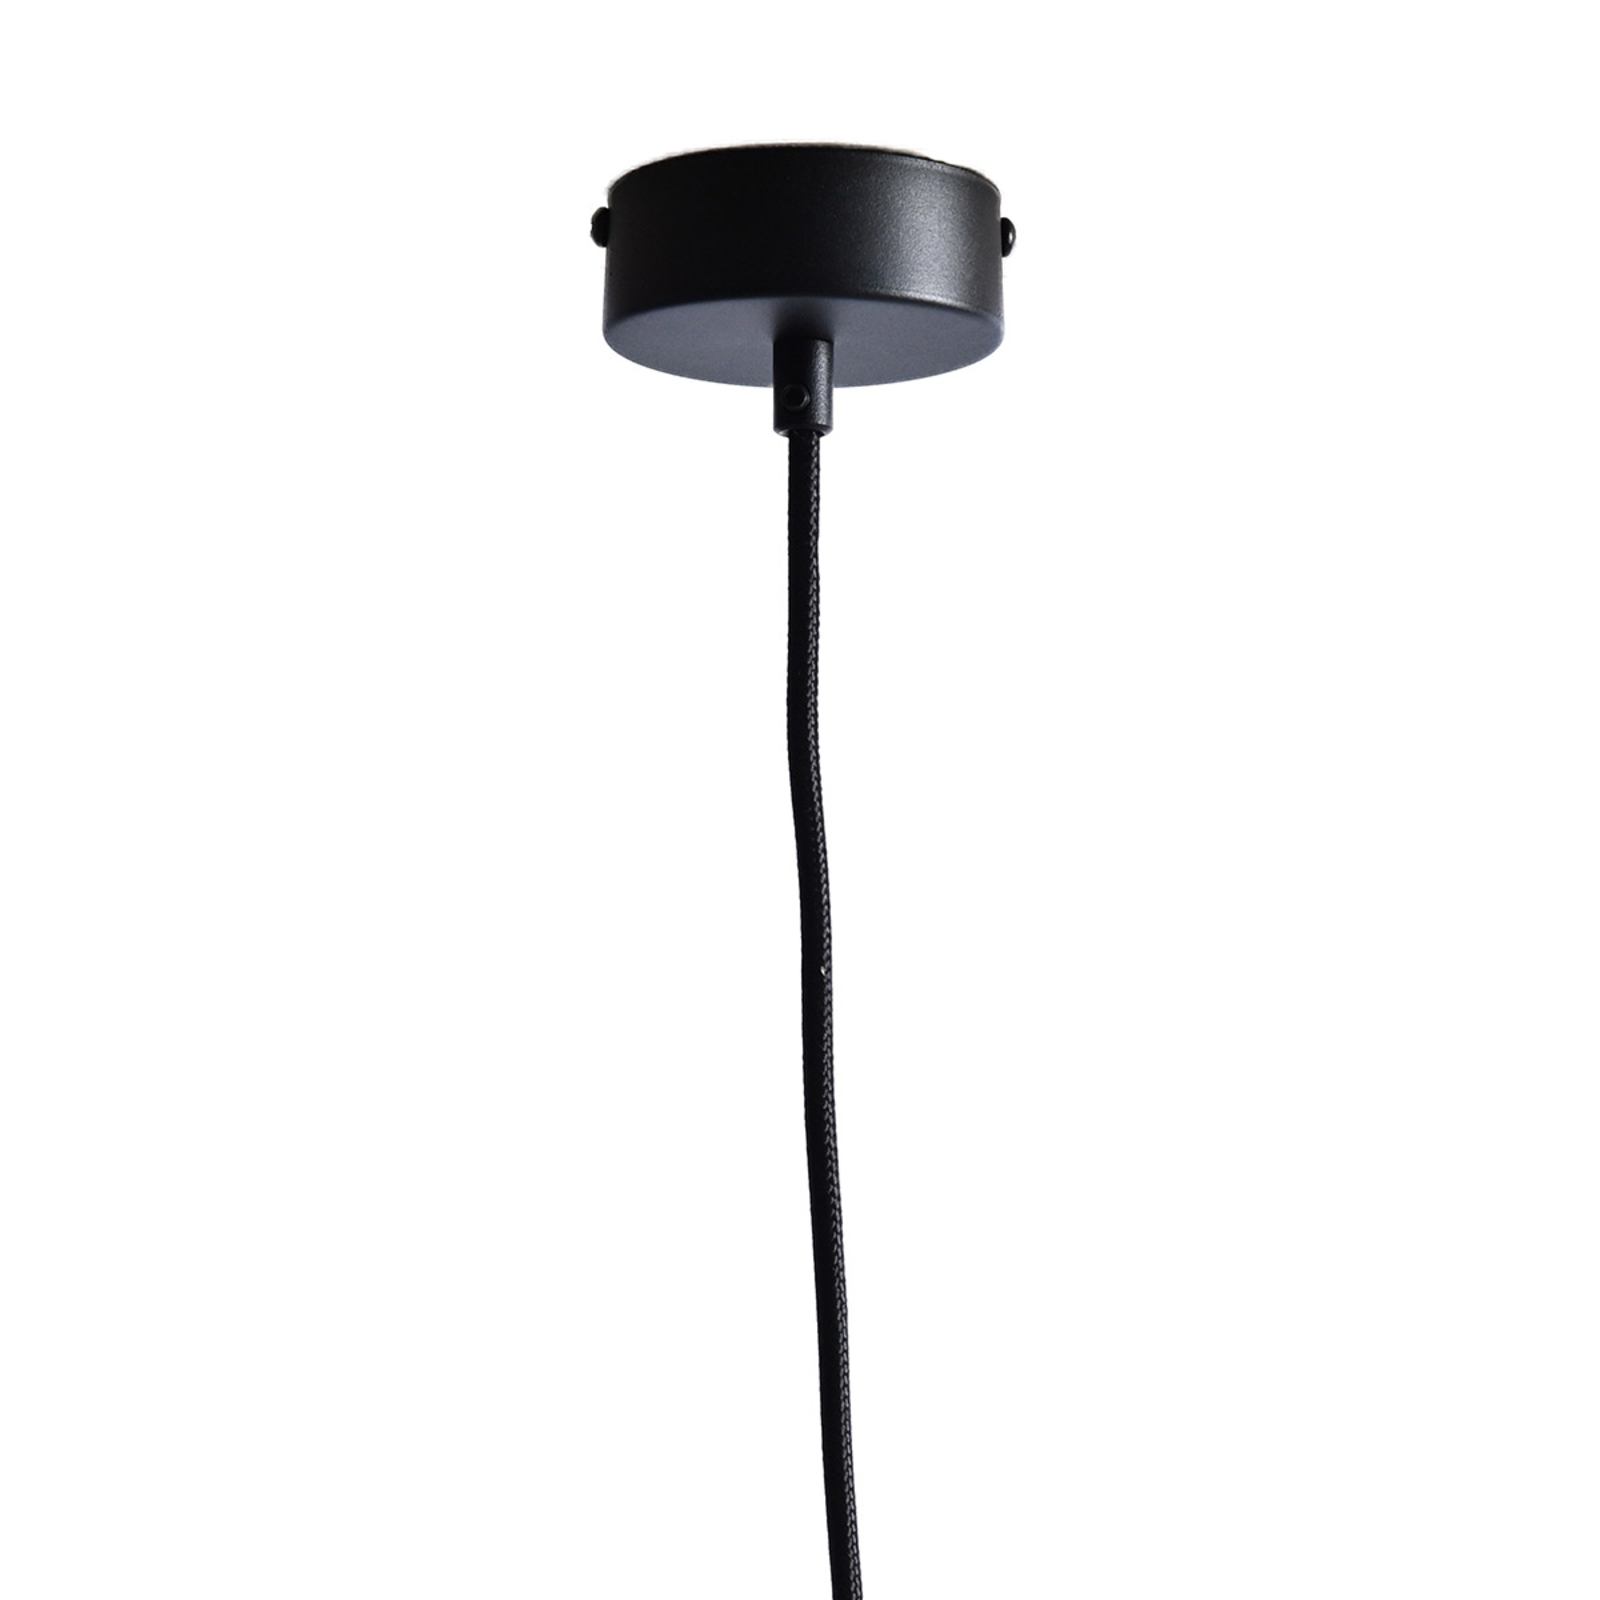 LeuchtNatur Nux hanglamp, den/zwart